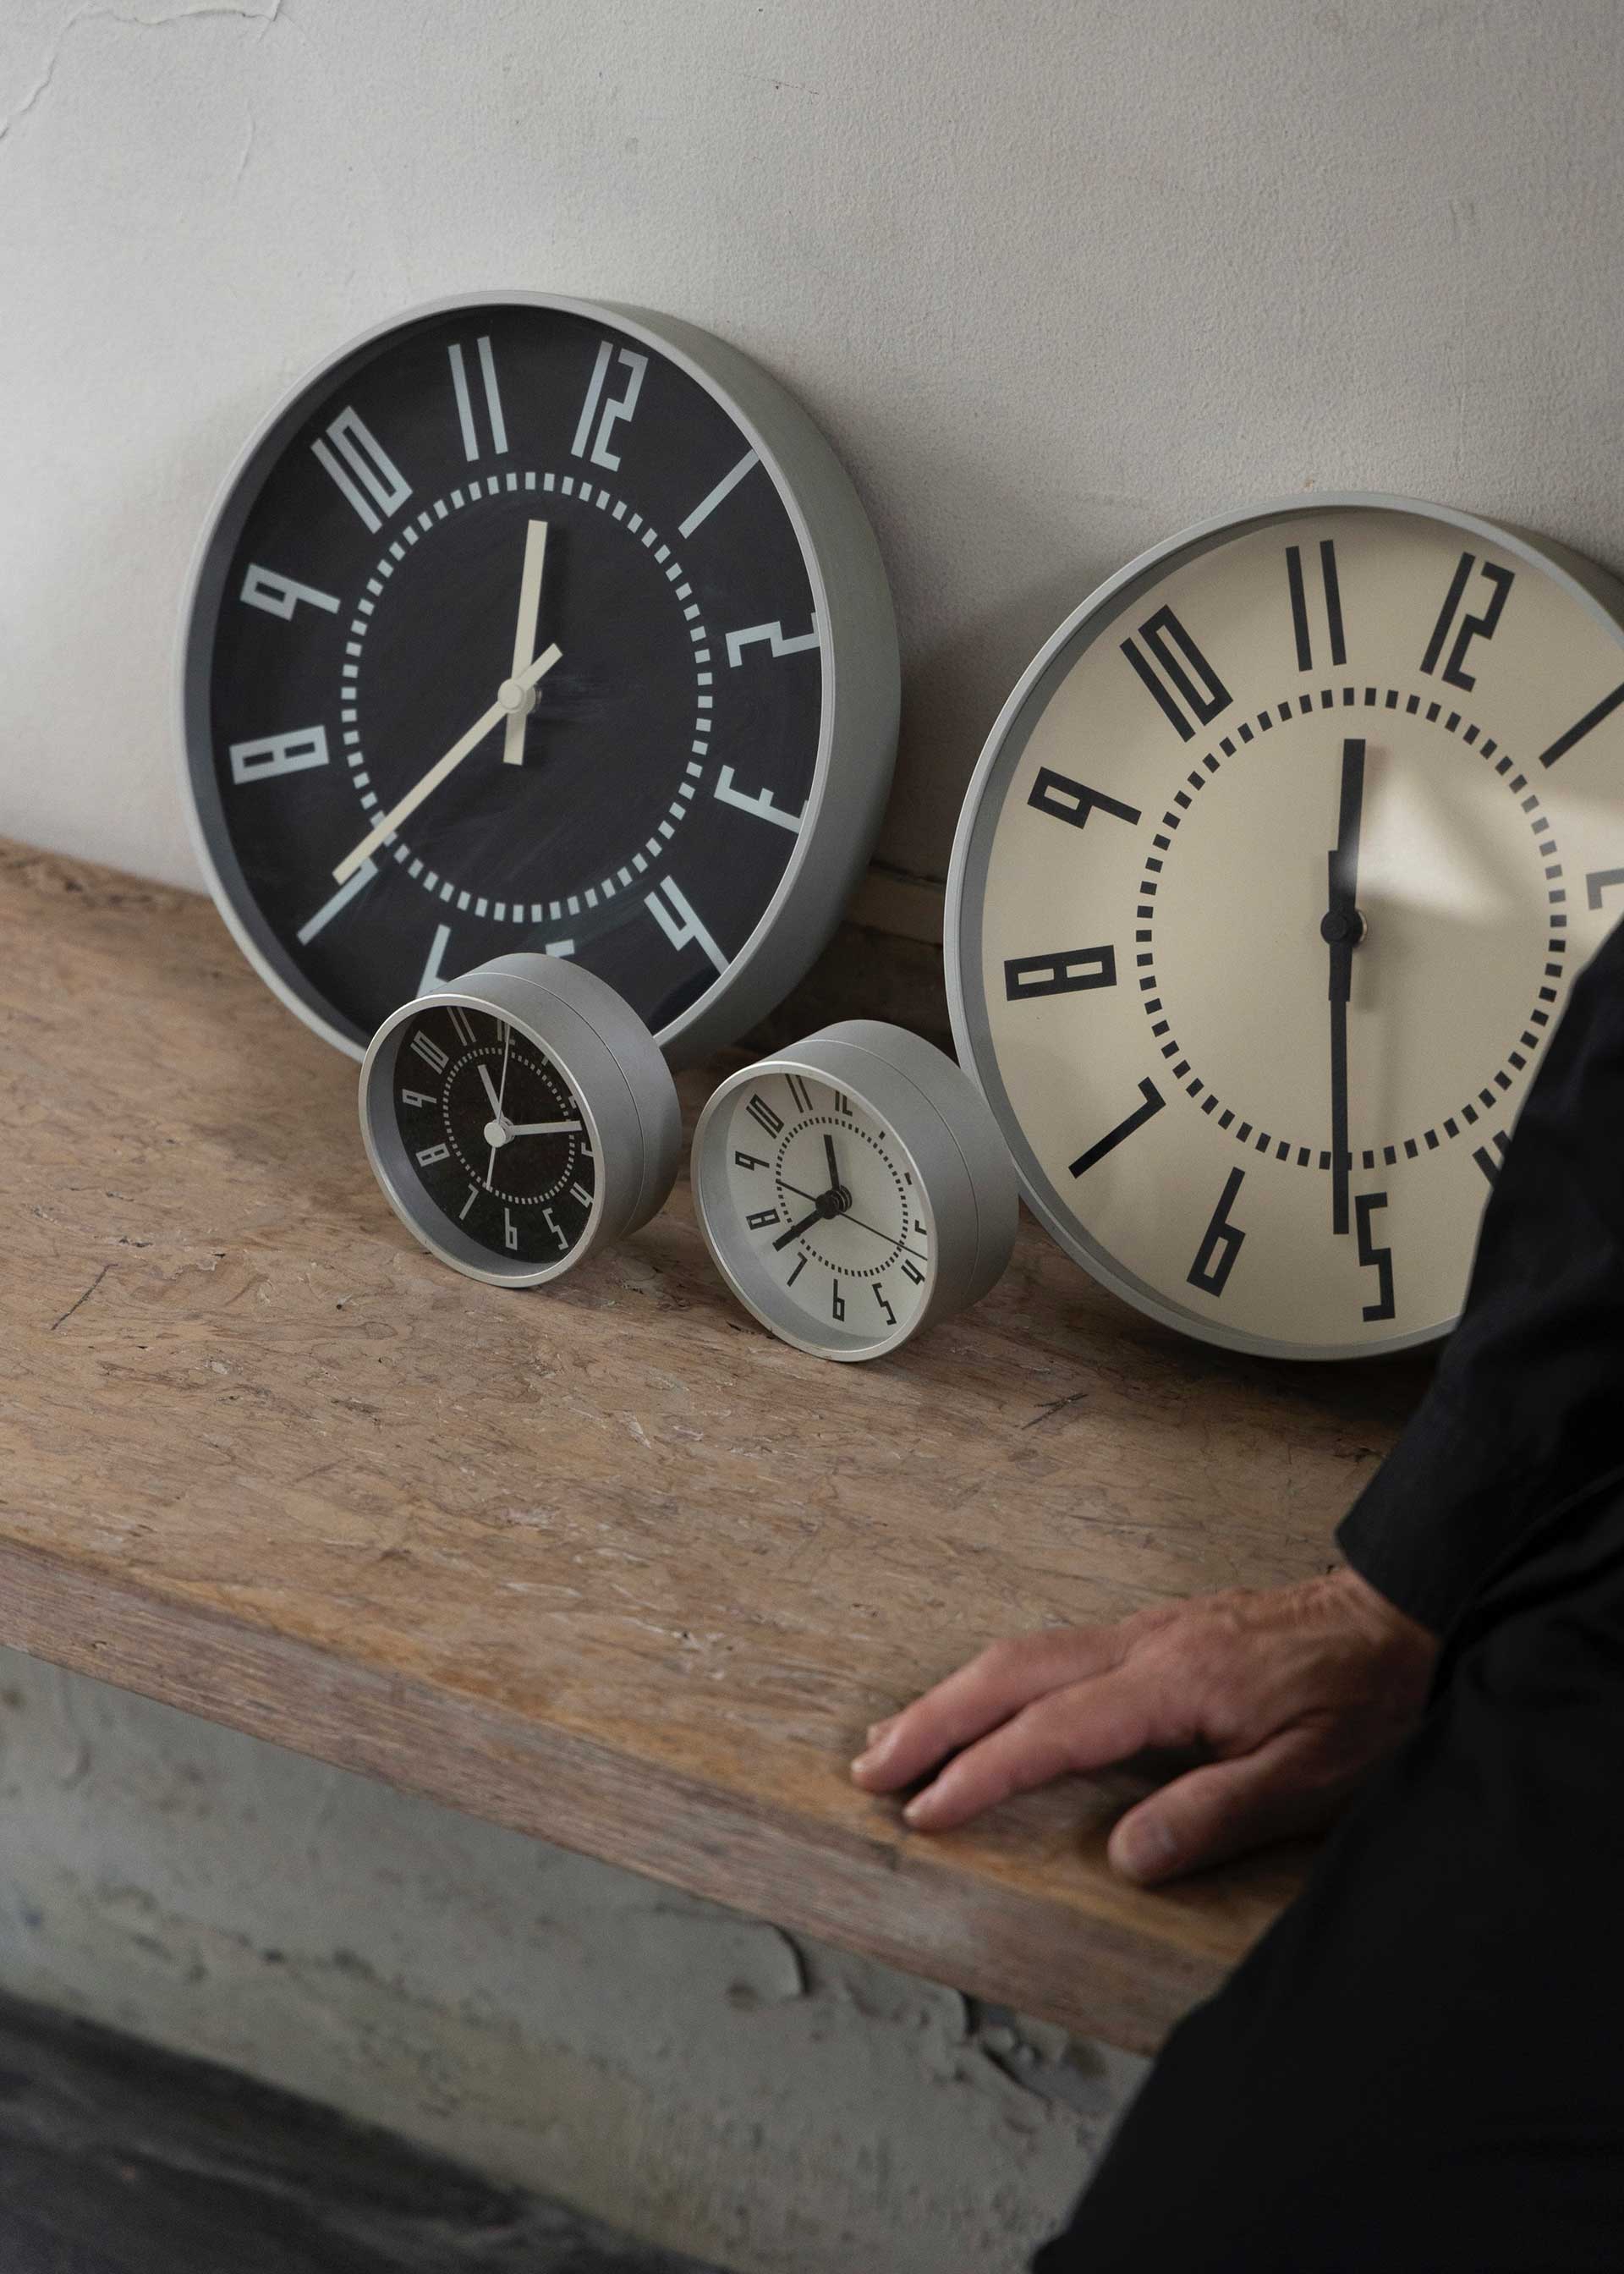 五十嵐威暢デザインの掛け時計eki clock25㎝と置き時計eki clock9.5cmは、ともに森さんがプロディースを手掛けたもの。